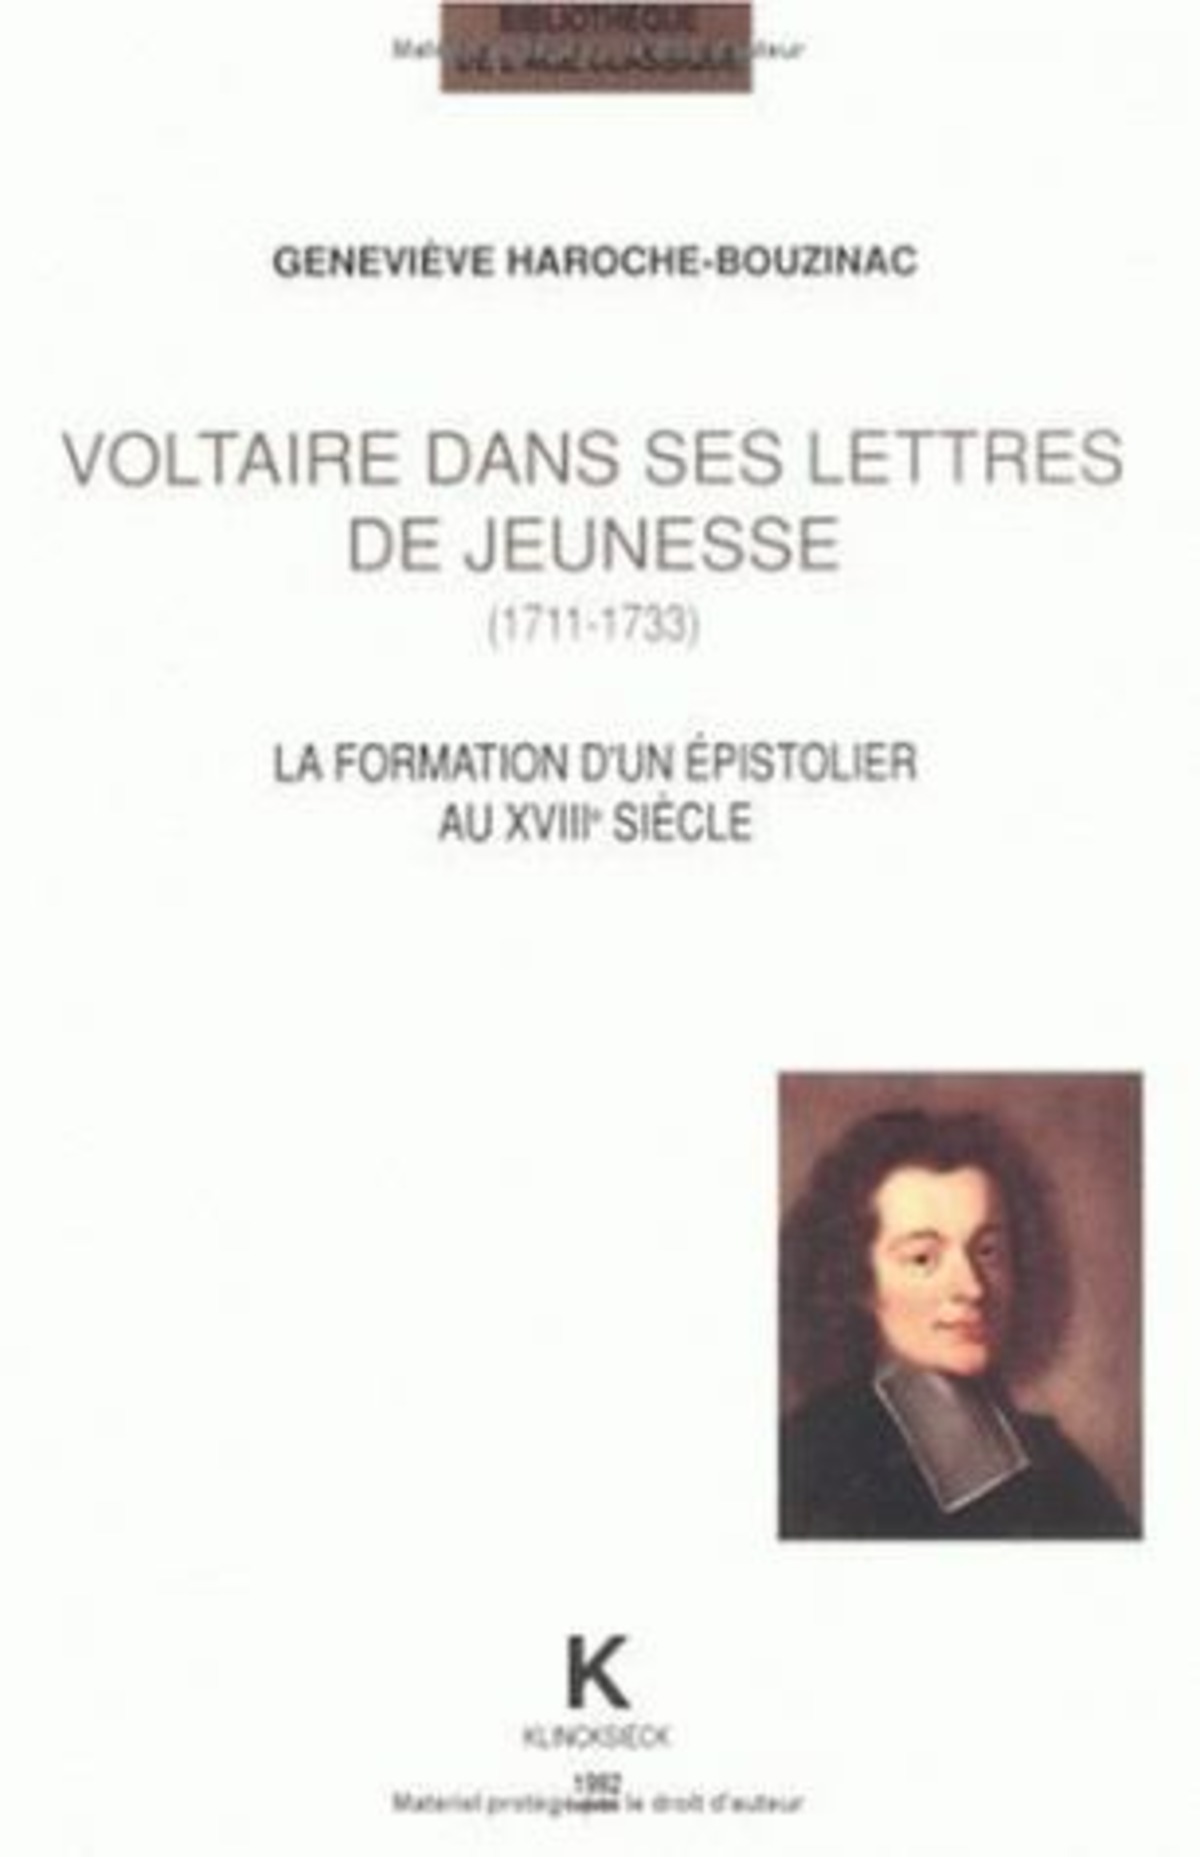 Voltaire dans ses lettres de jeunesse (1711-1733)